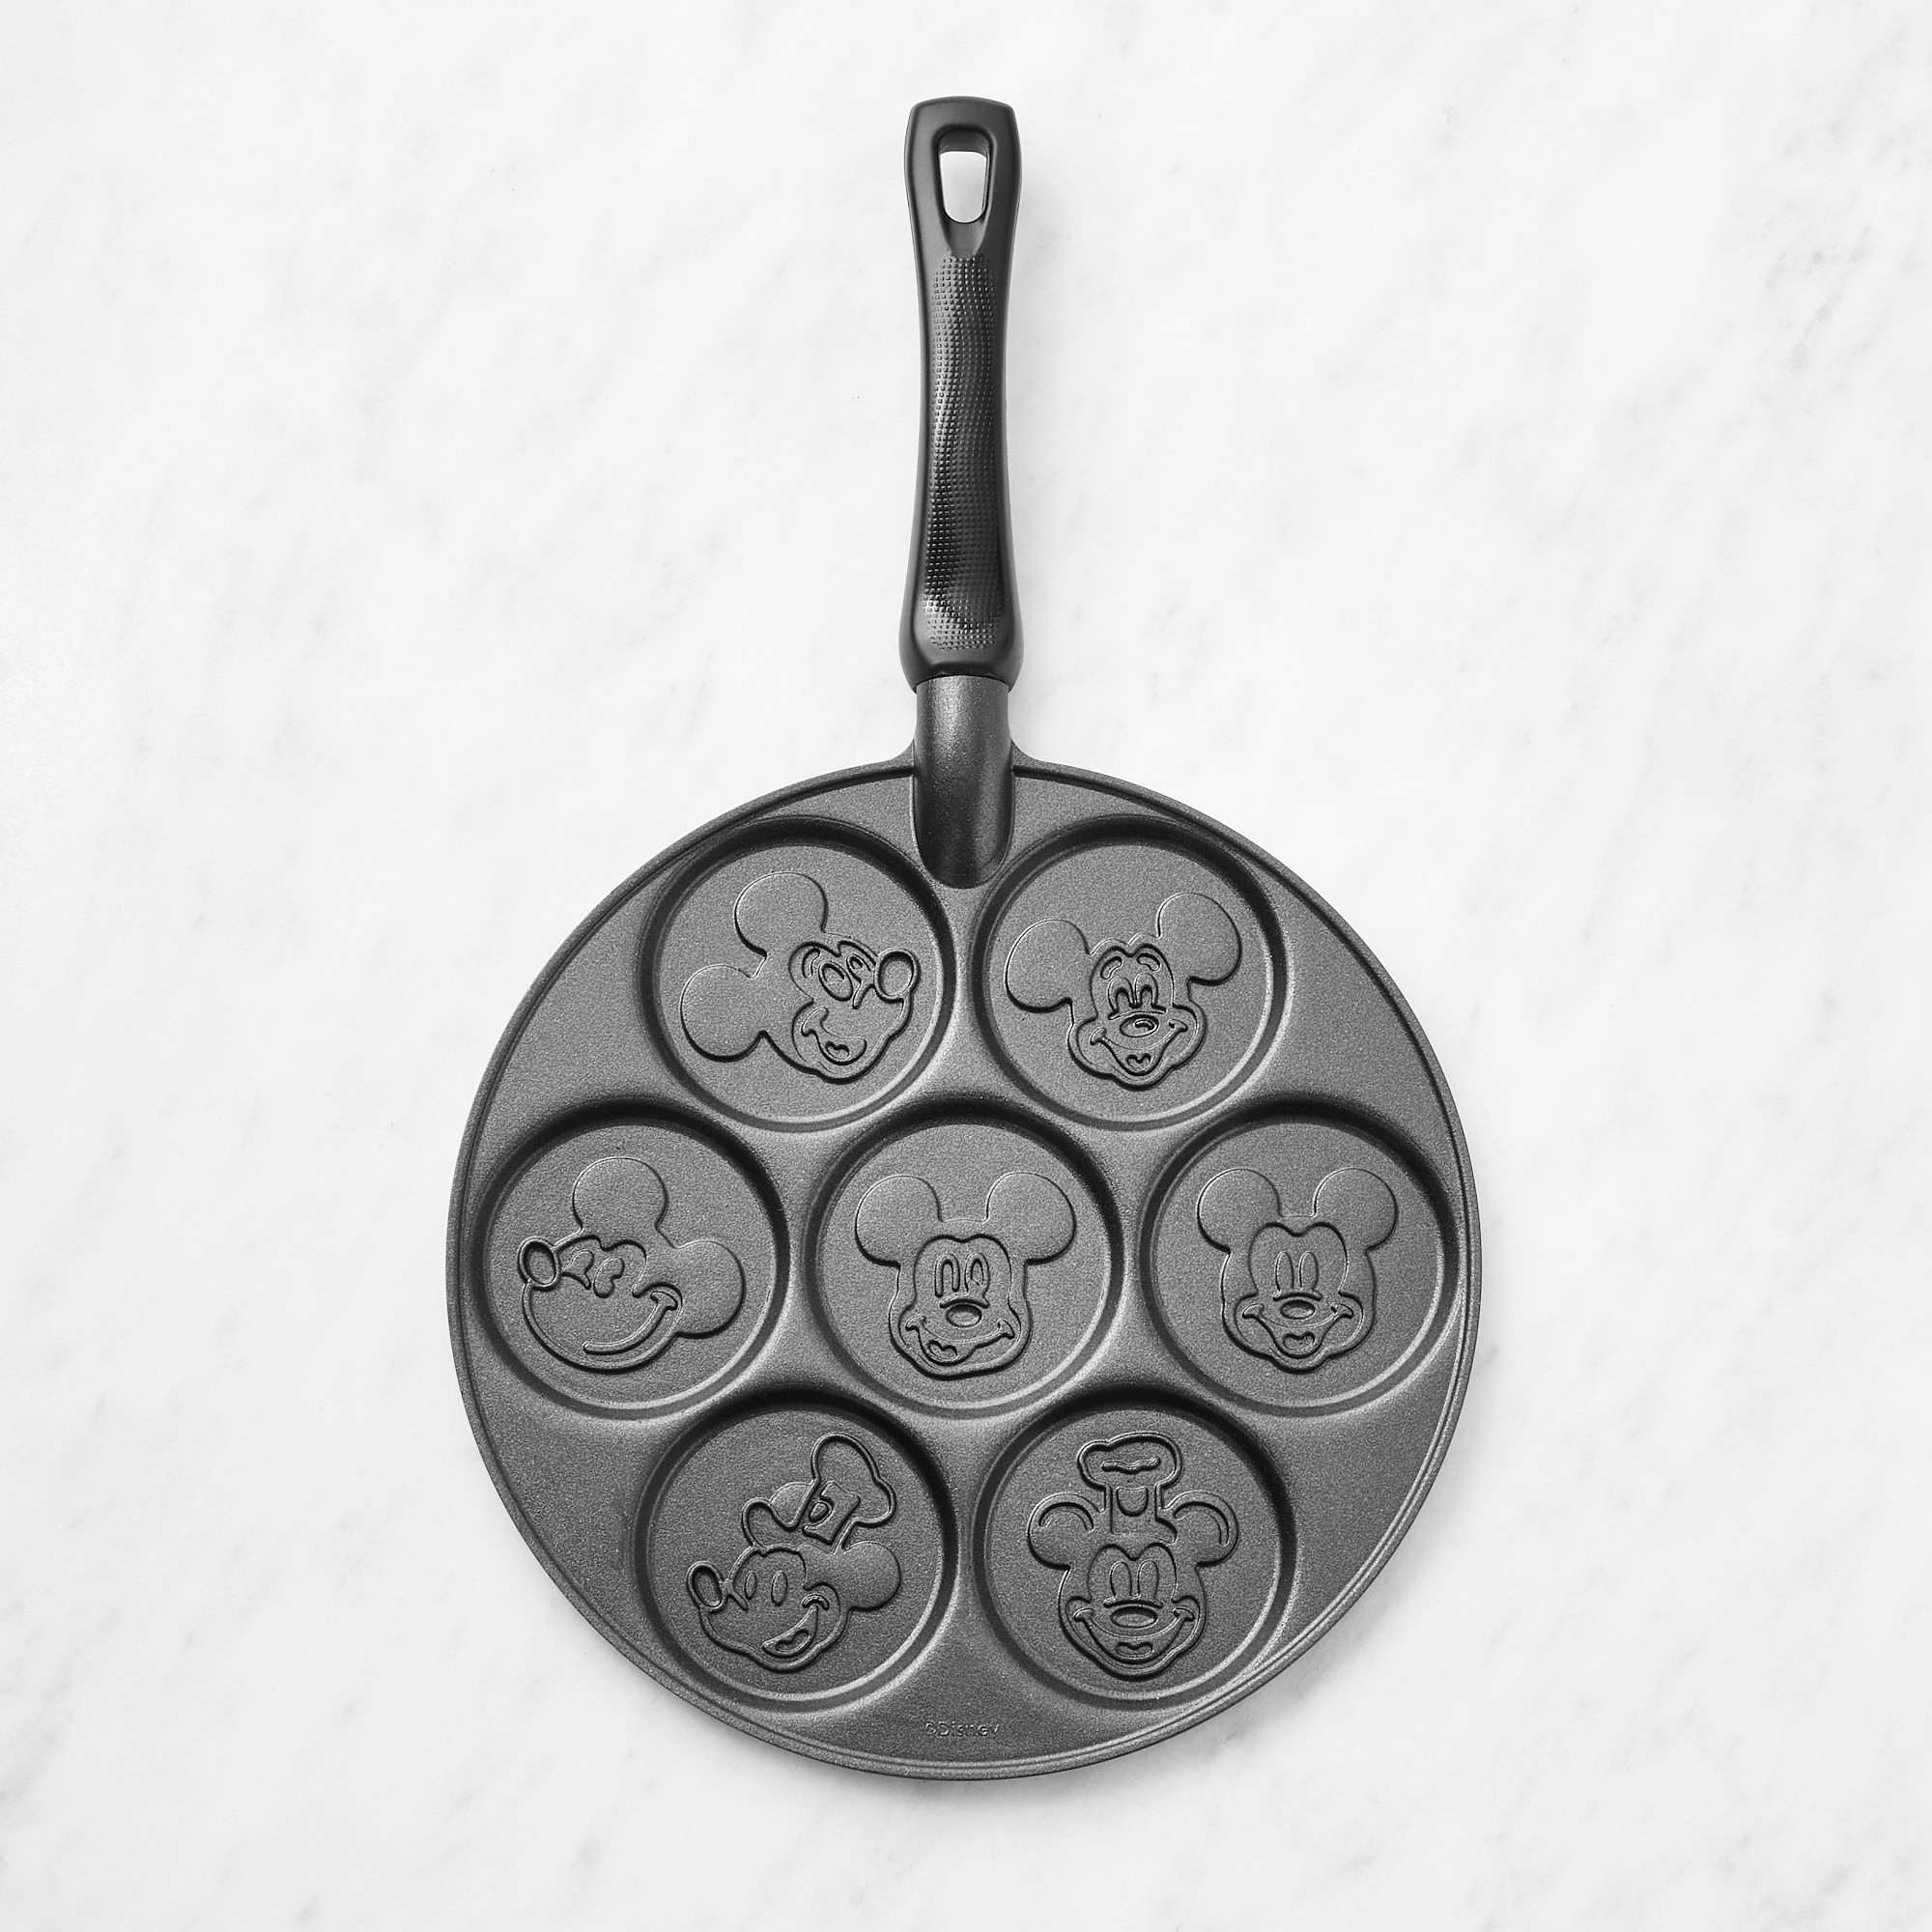 Nordic Ware Mickey Mouse™ Nonstick Pancake Pan